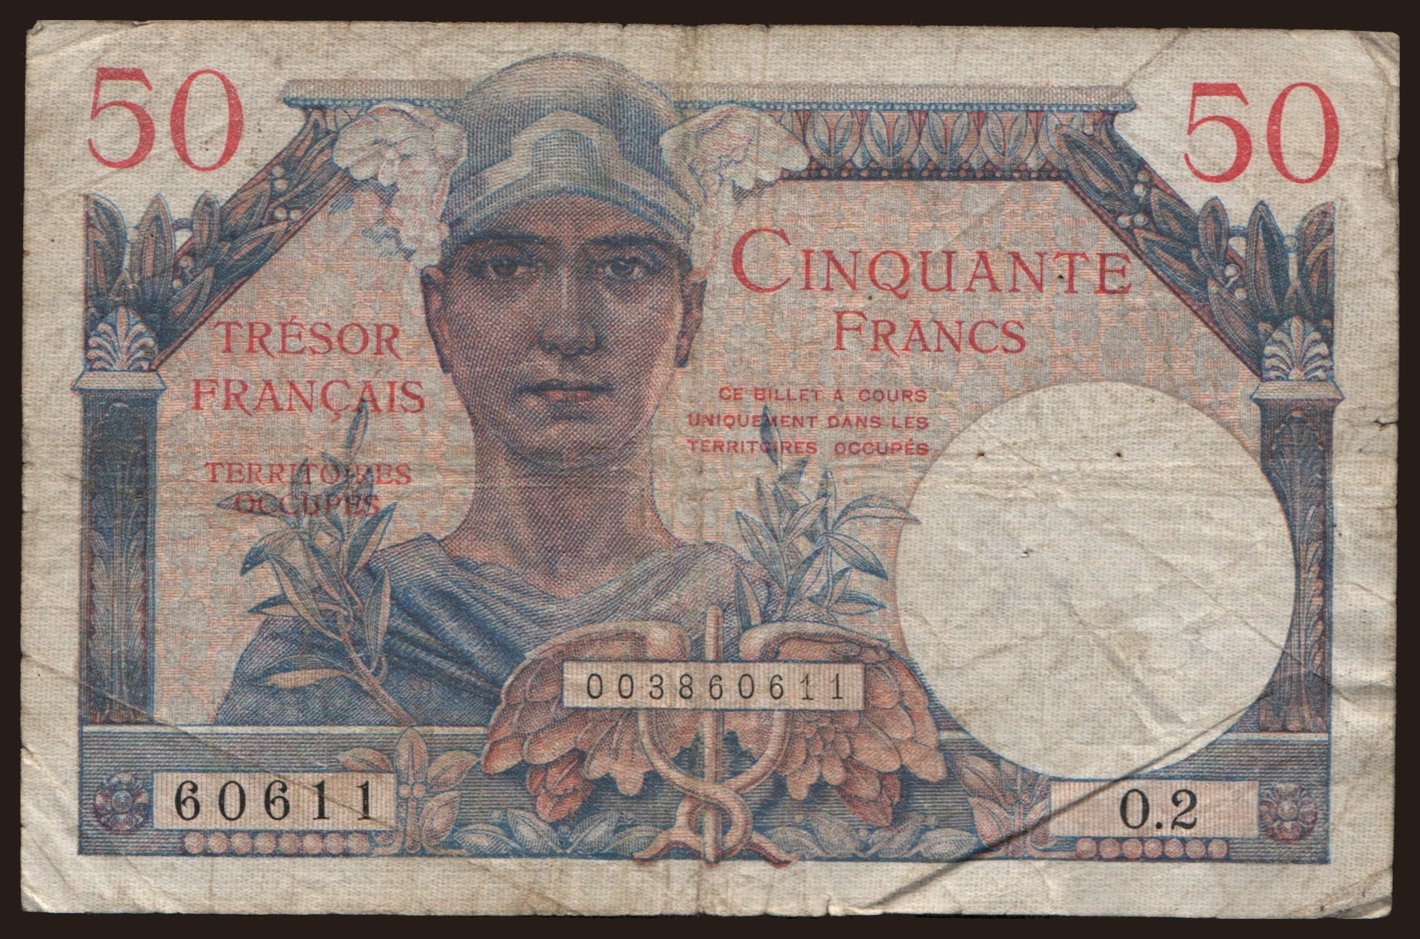 Tresor Francais, 50 francs, 1947